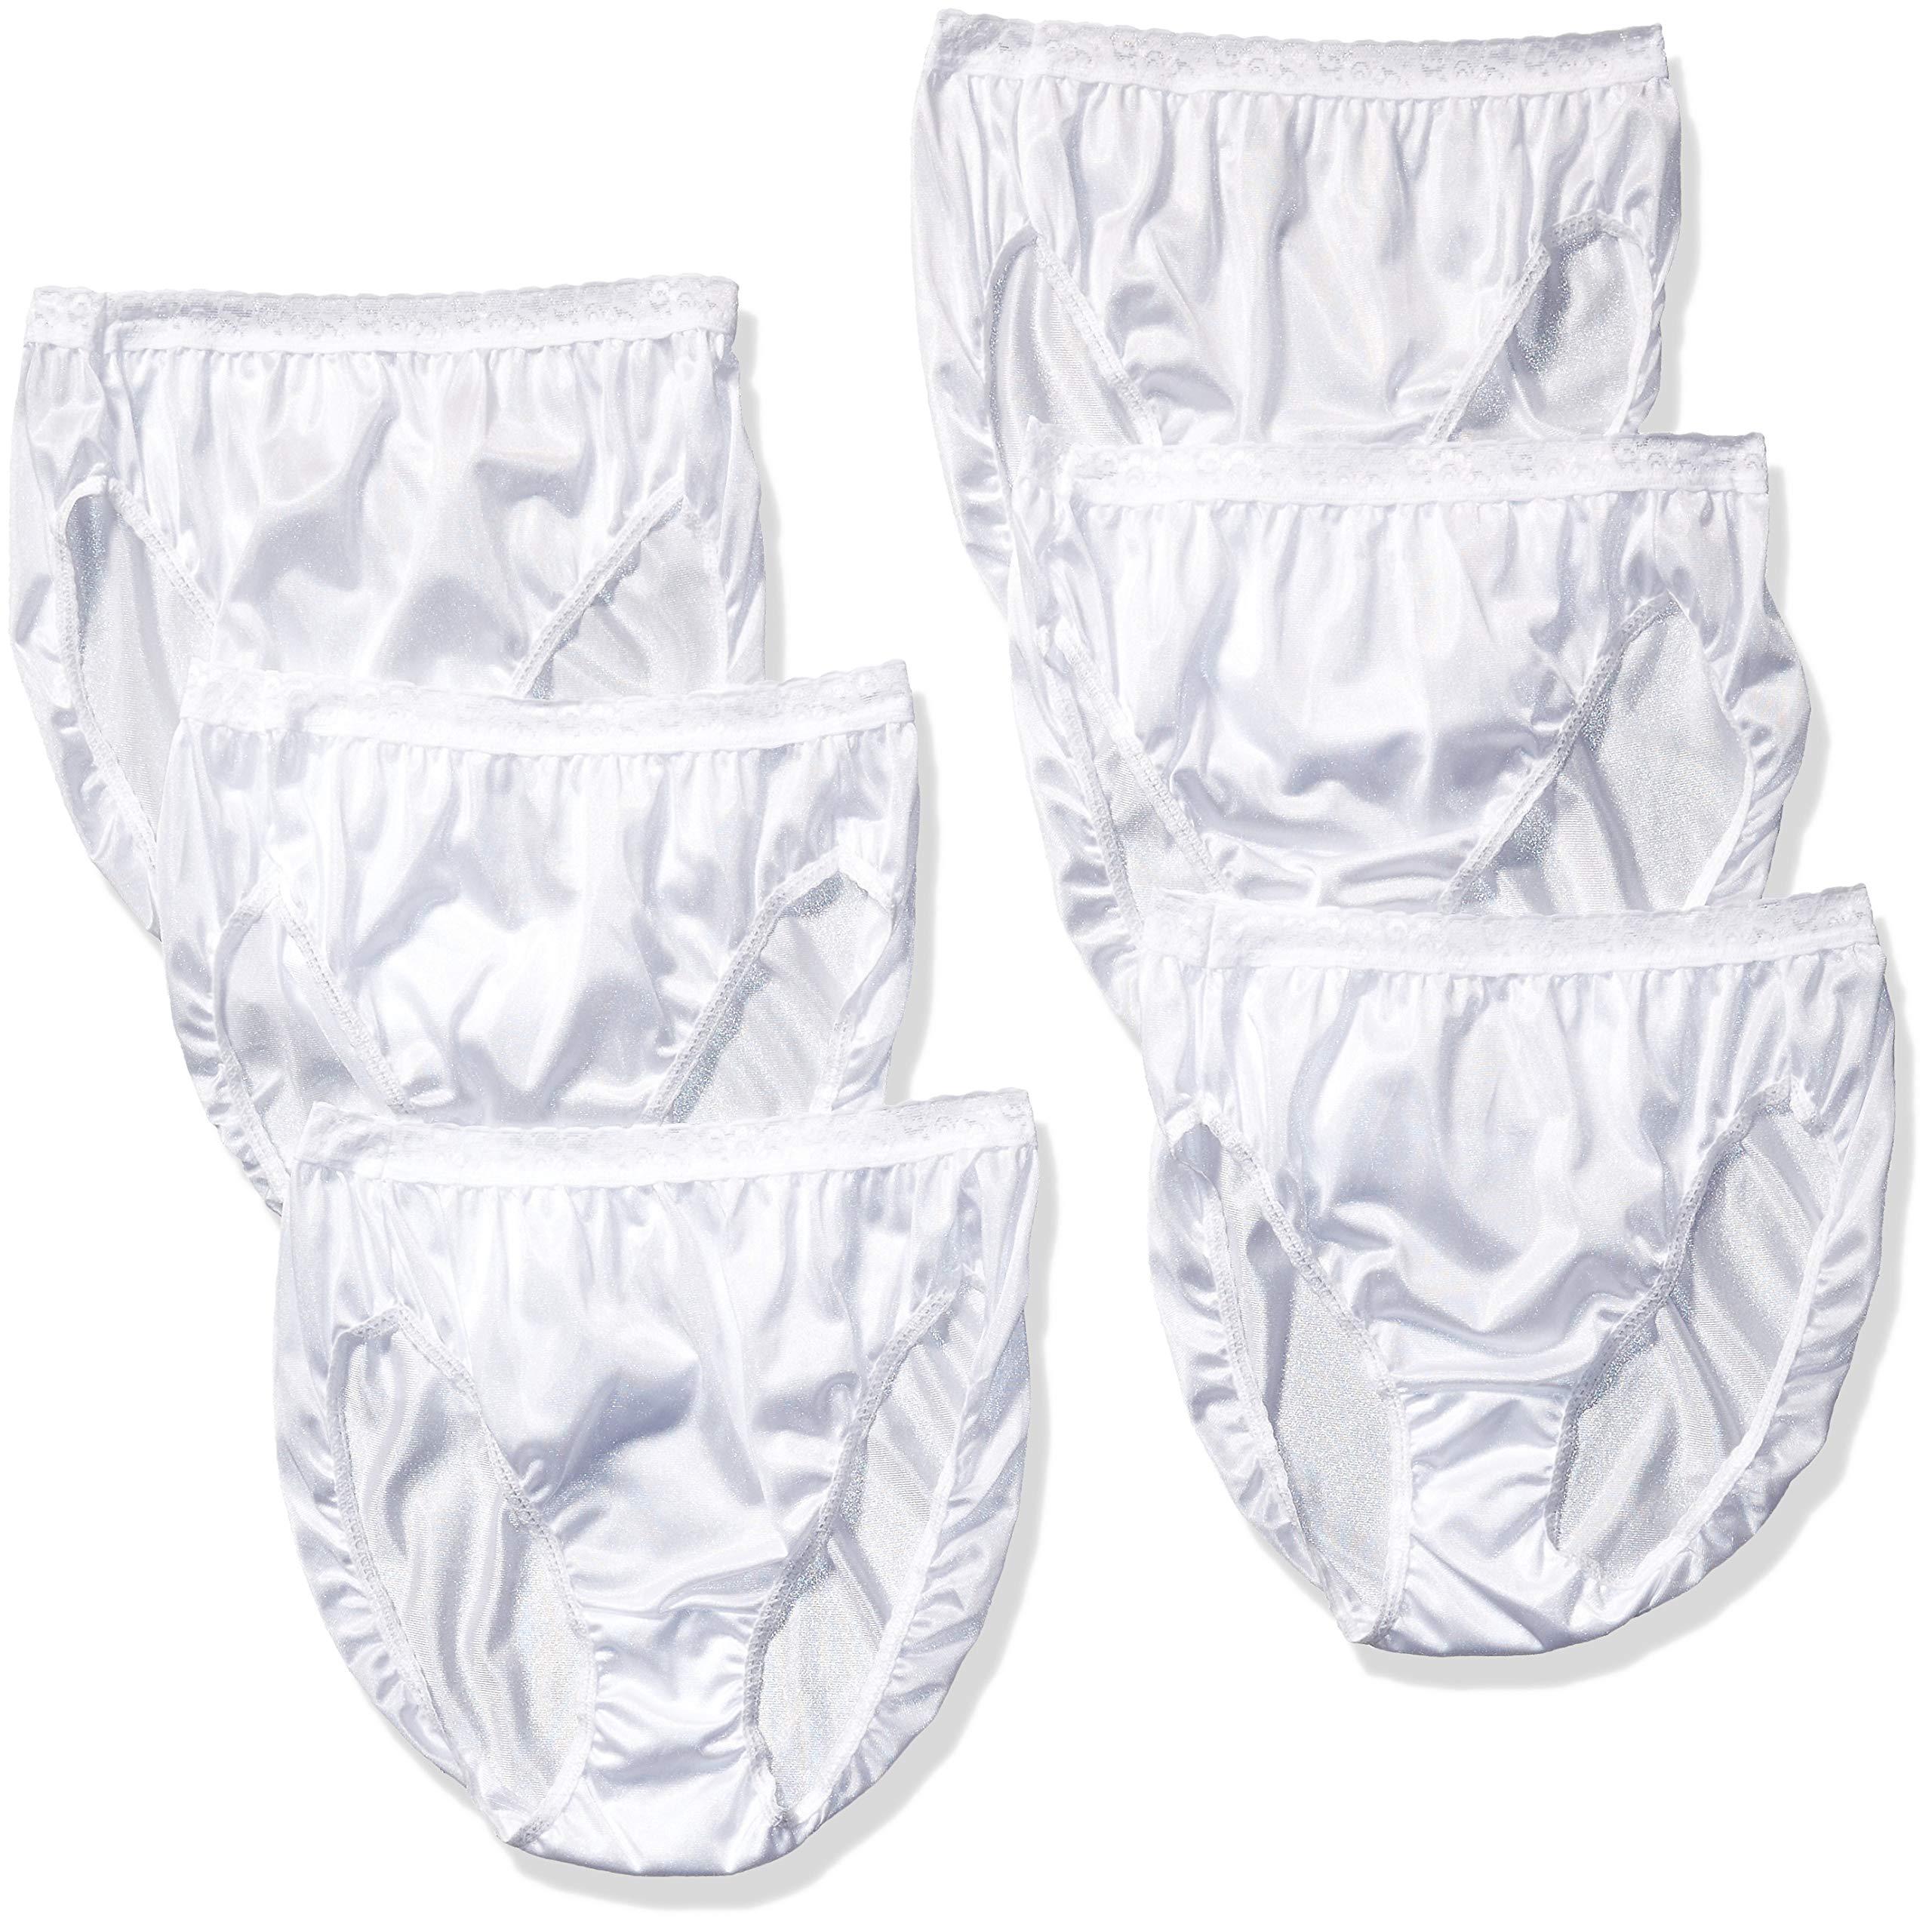 Hanes 6 Pack Nylon Hi-cut Panties in White | Lyst